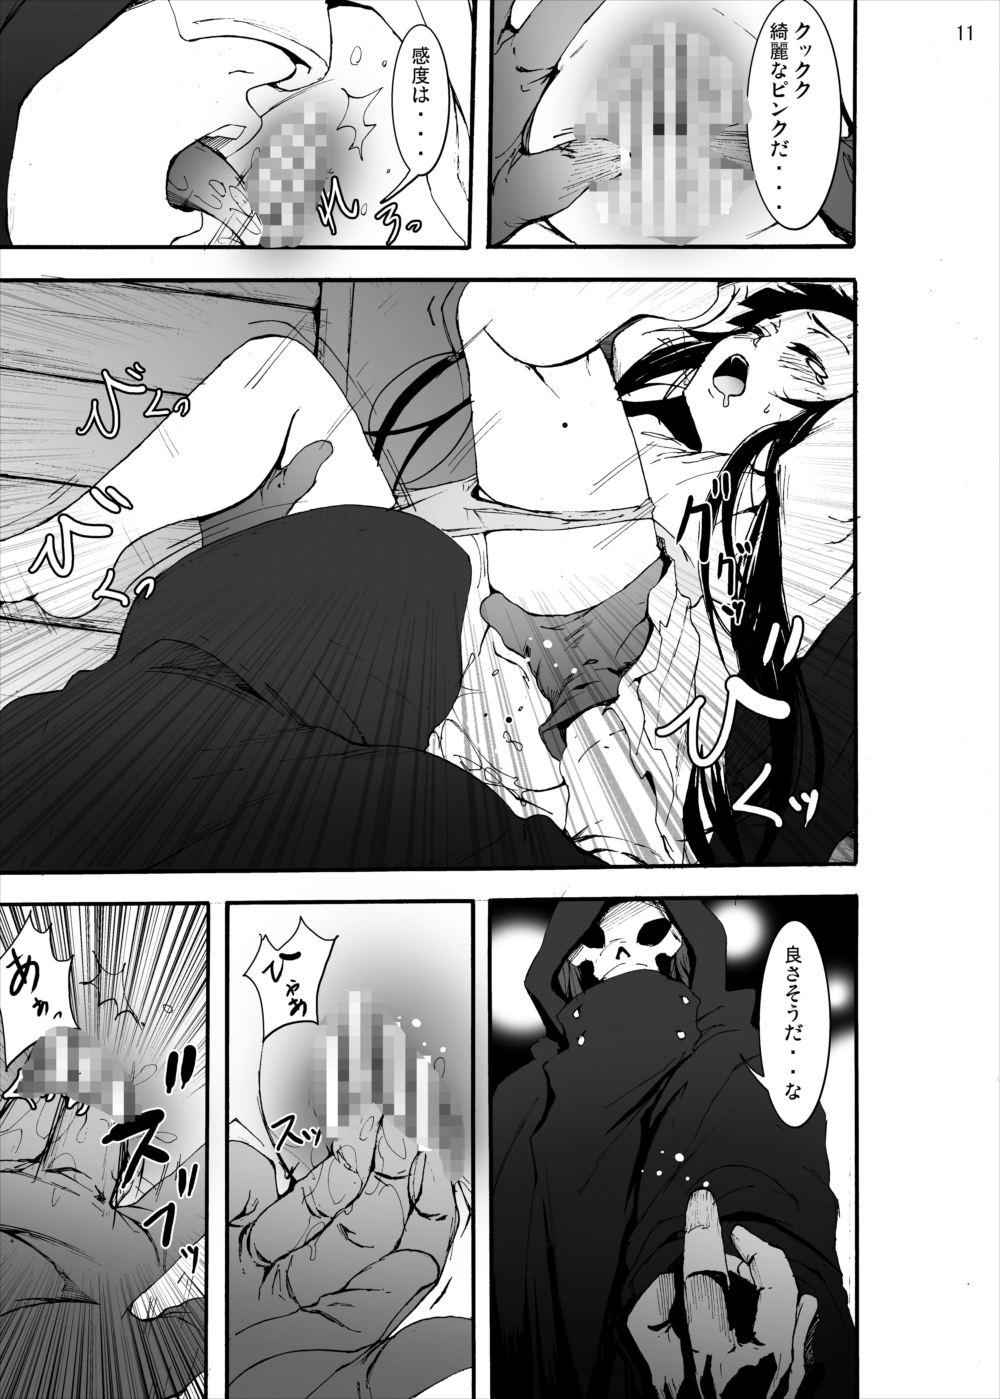  Asuna to Yui no Jigoku Rape... Ryoujoku Oyakodon Story - Sword art online Free Porn Hardcore - Page 10